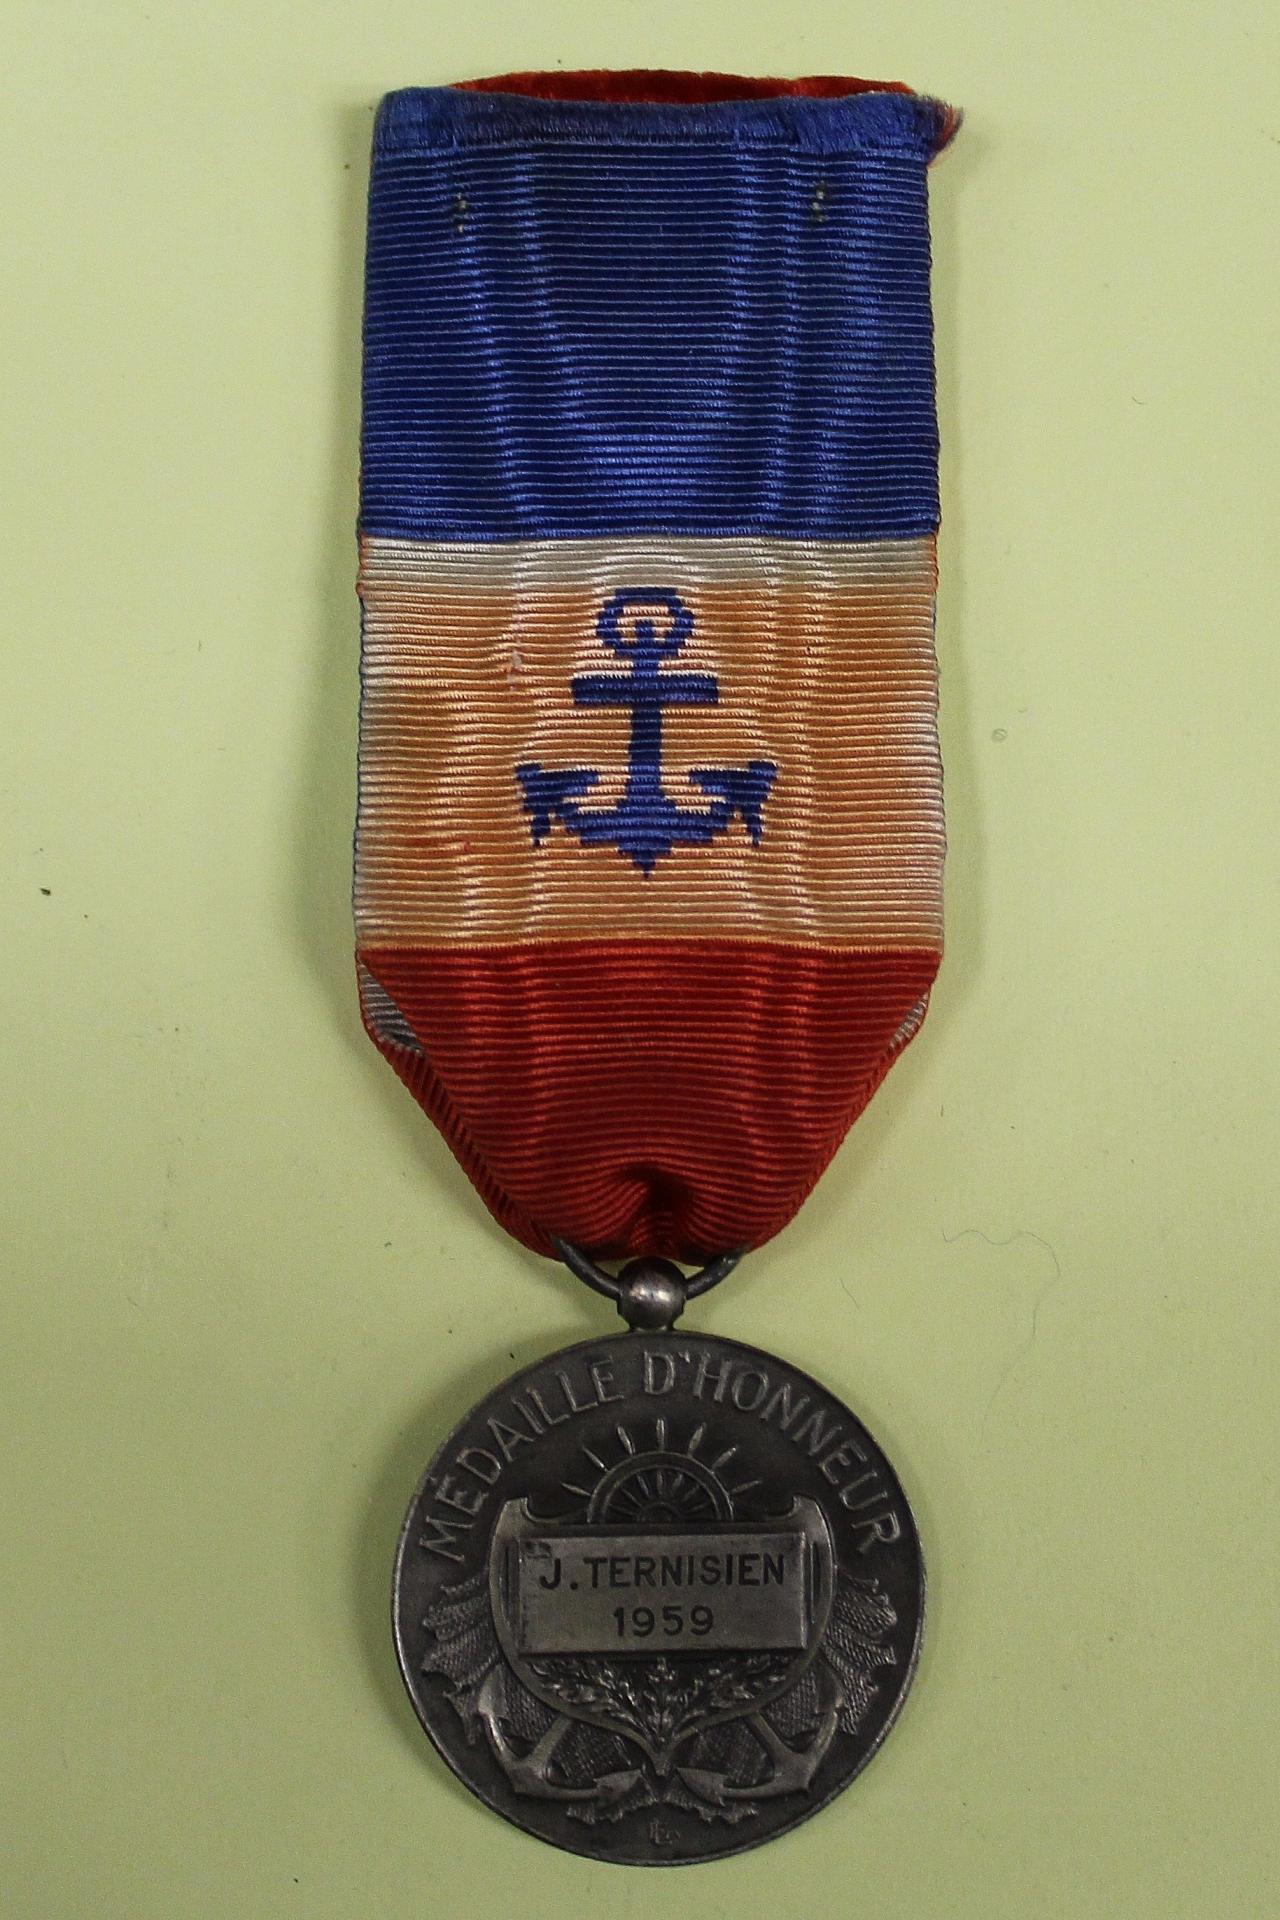 Calais medaille d honneur de sauveteur j ternisien 1959